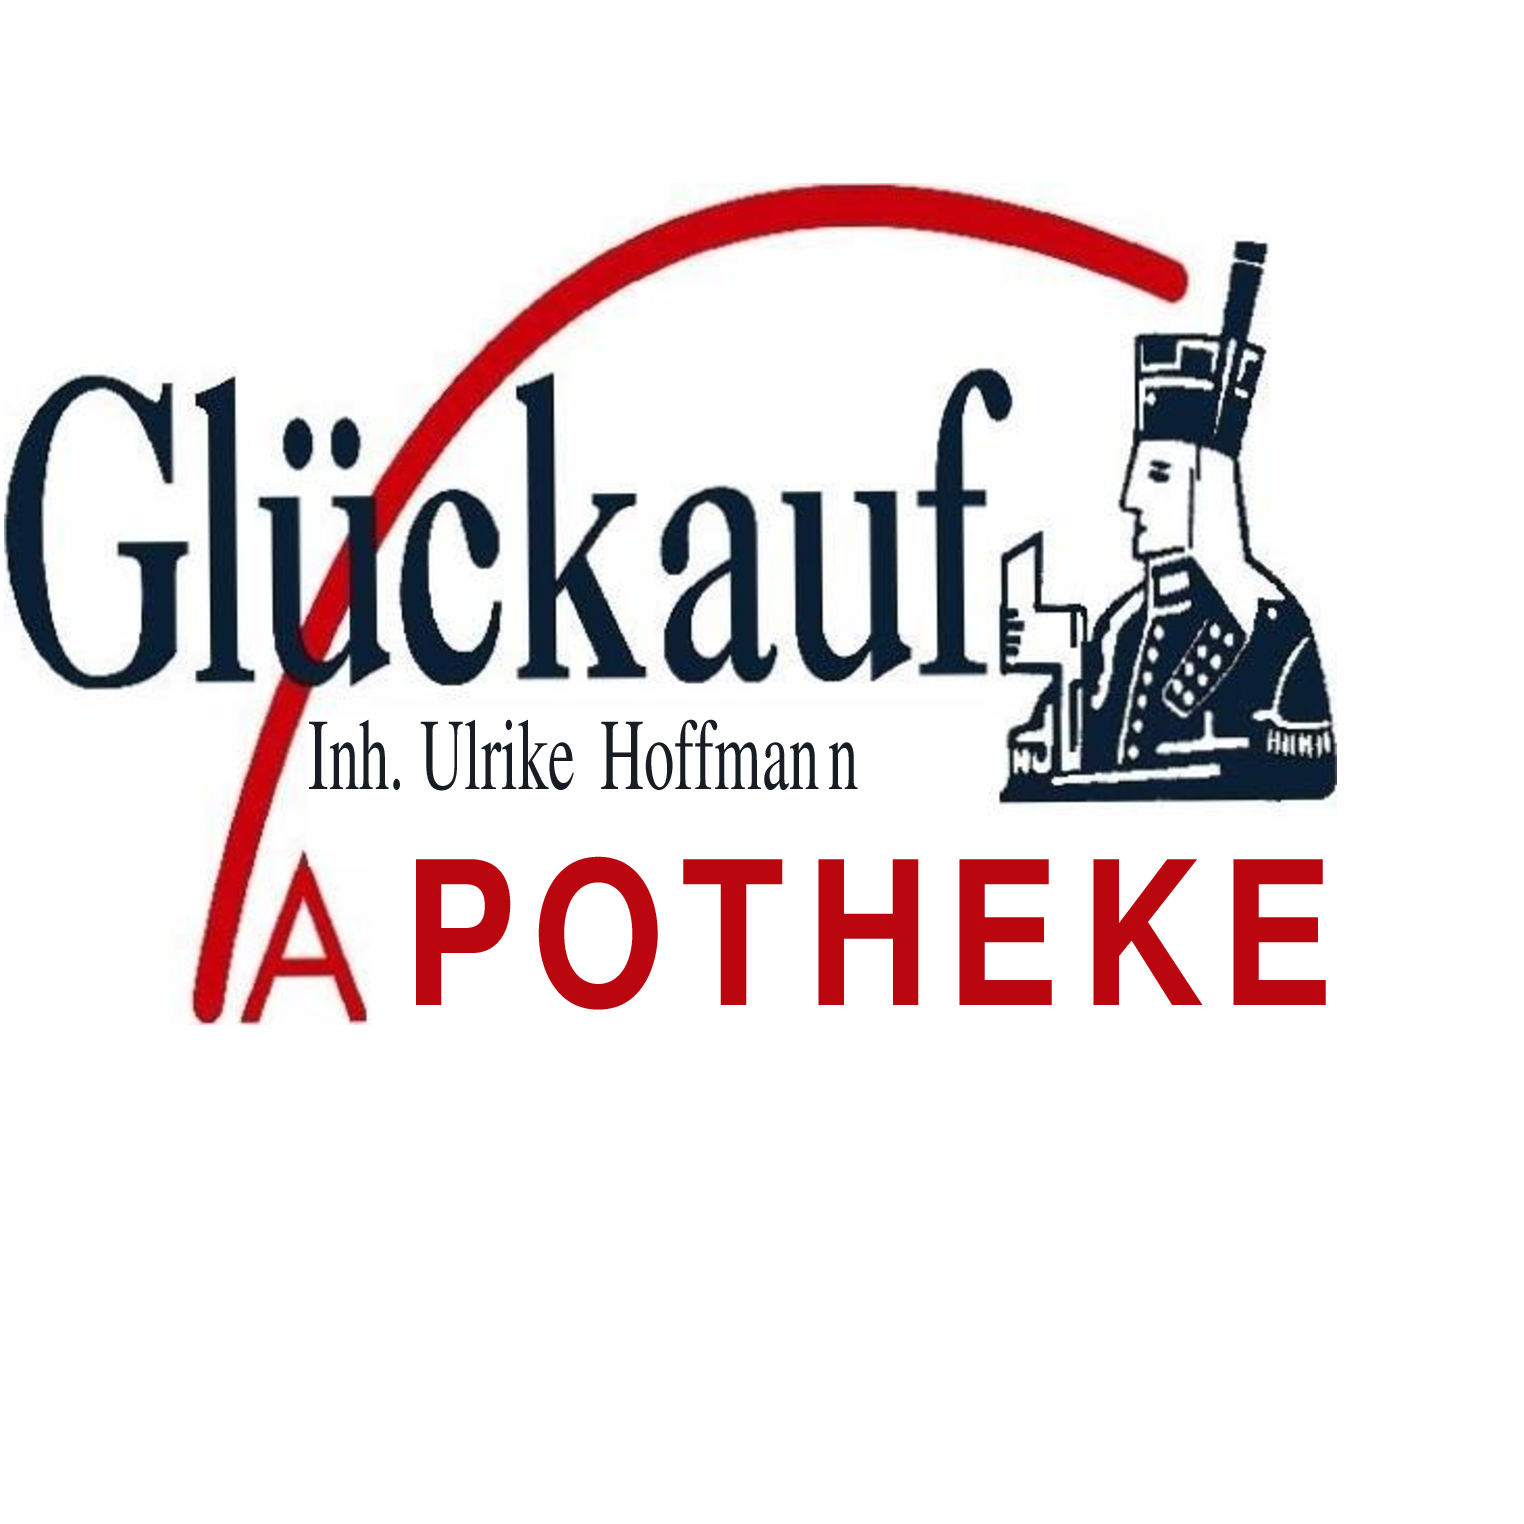 Glückauf-Apotheke in Zwickau - Logo